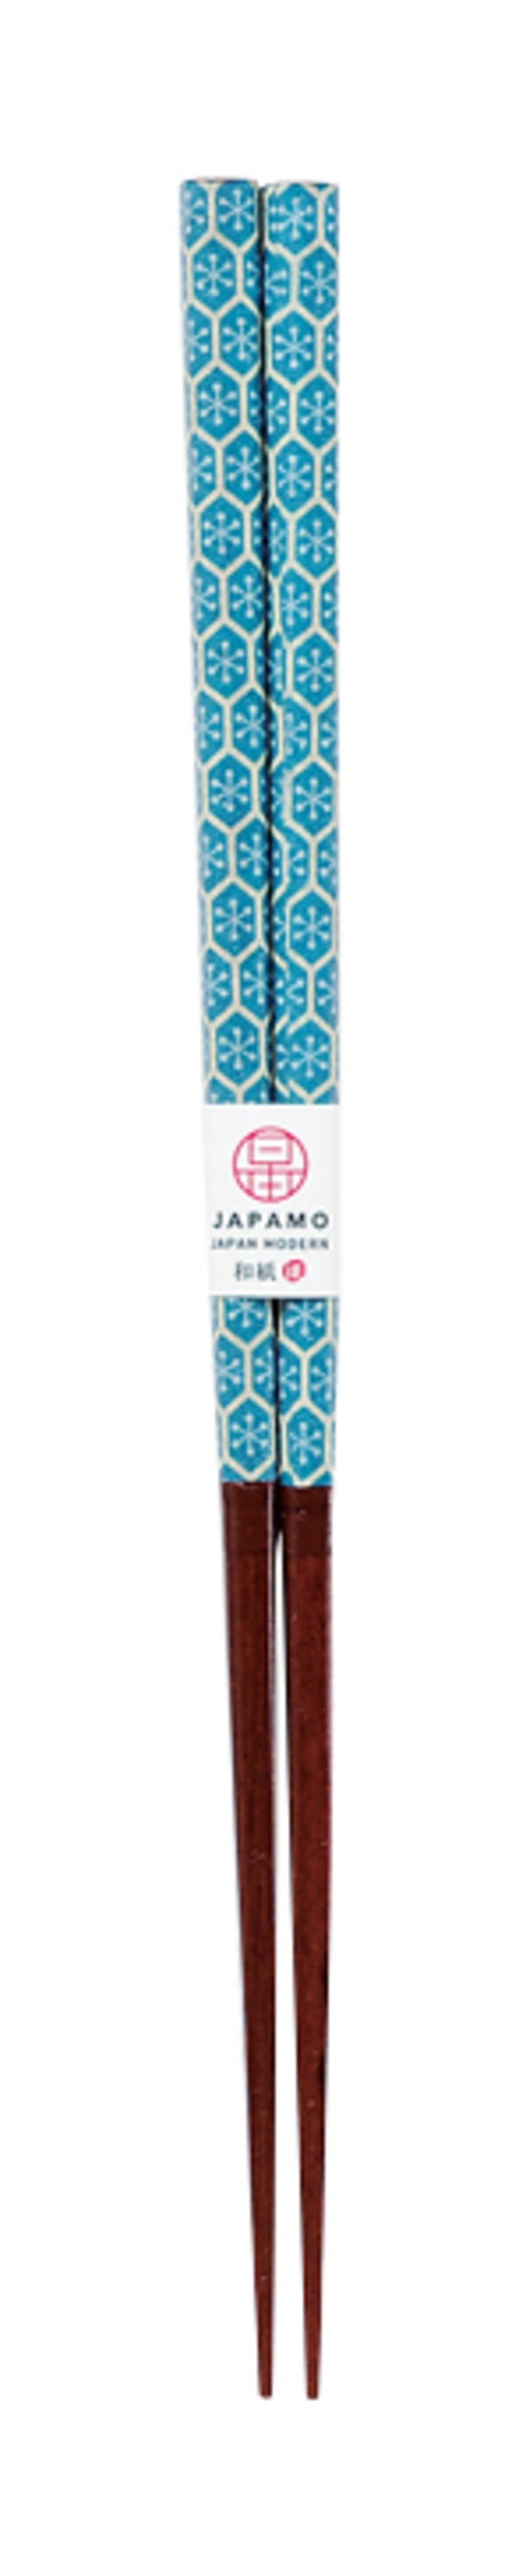 日本製和紙木筷子